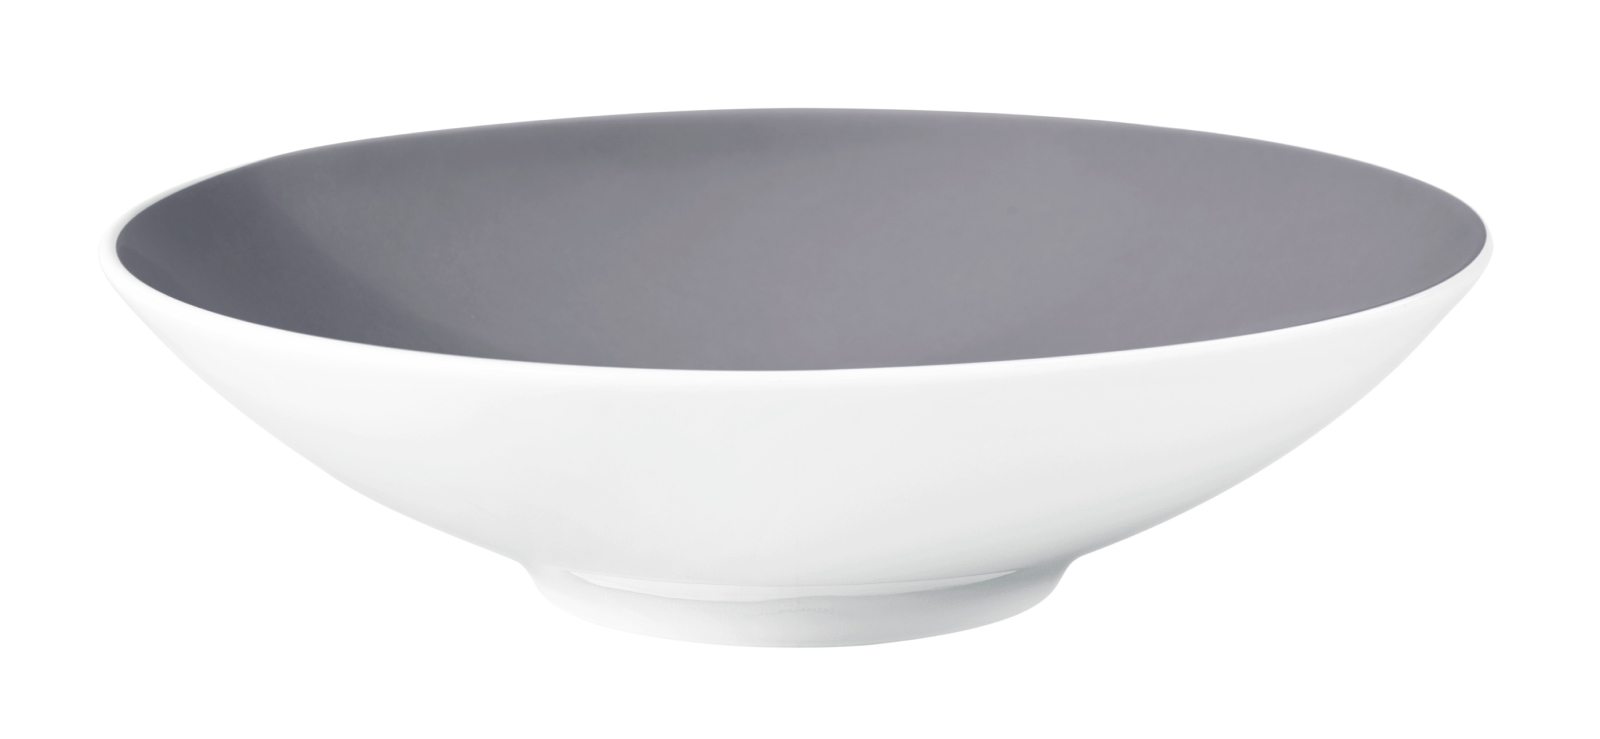 Seltmann Weiden LIFE Fashion elegant grey Suppenteller rund 20 cm